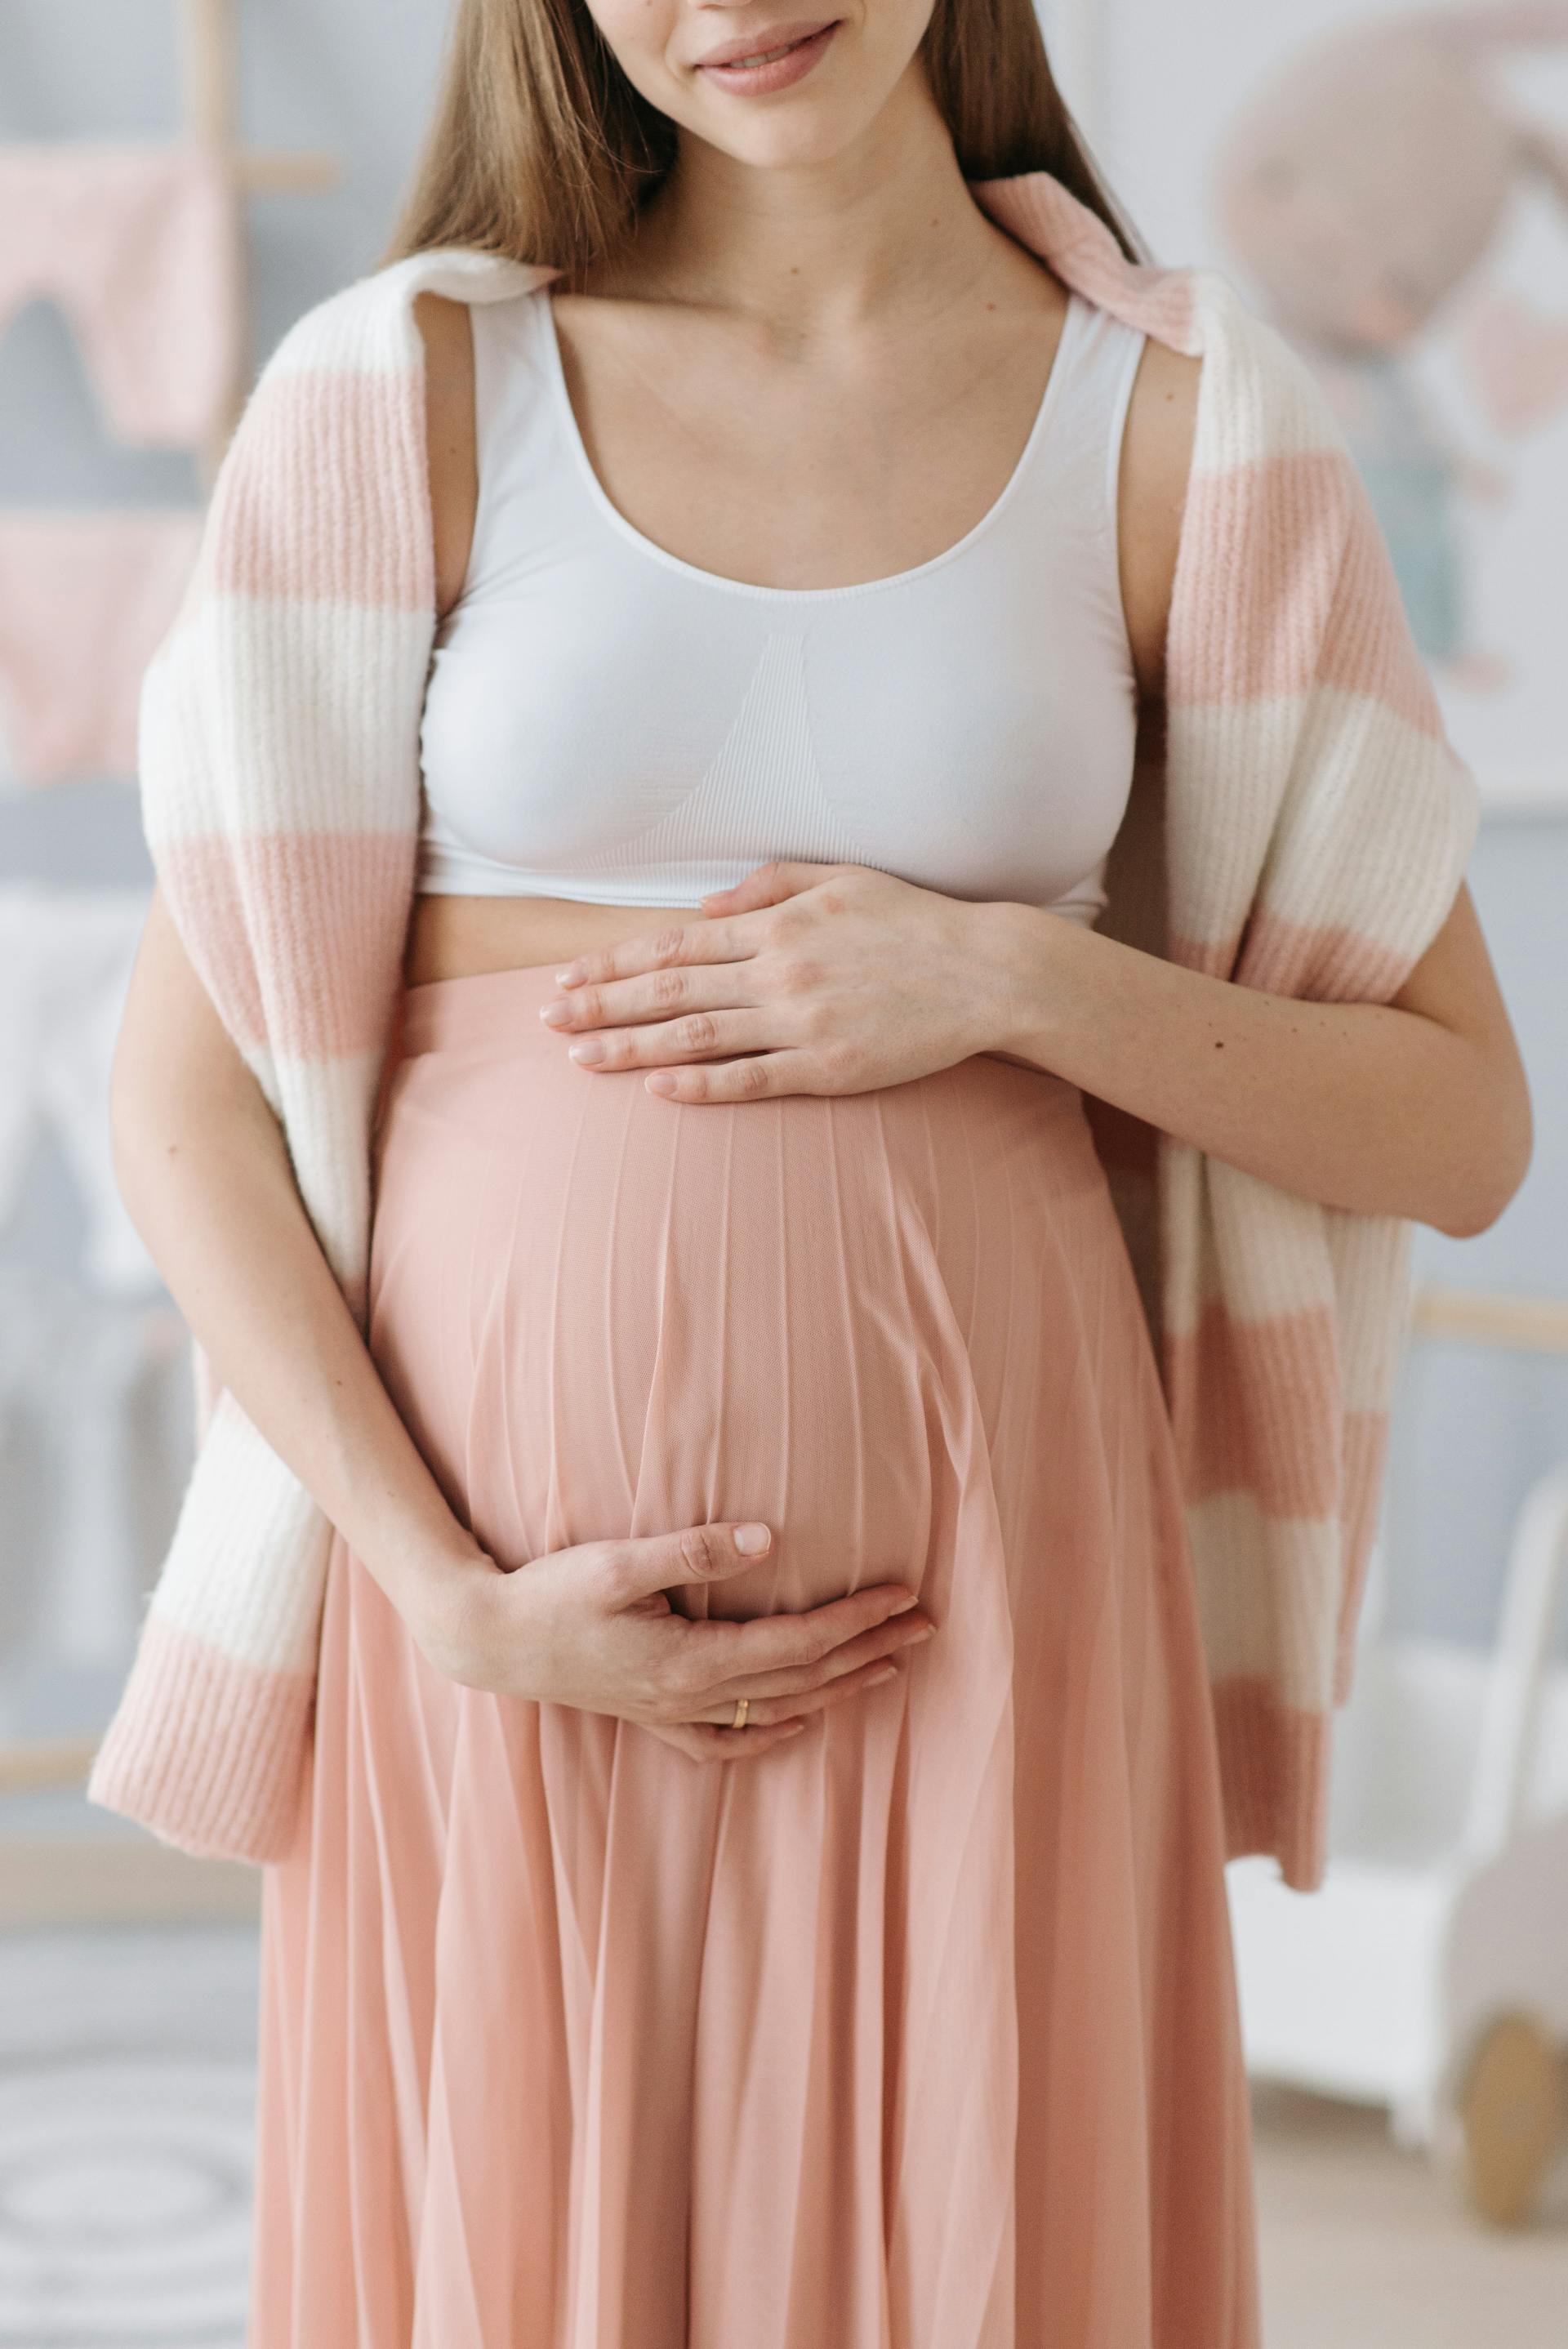 Une femme tenant son baby-bump | Source : Pexels